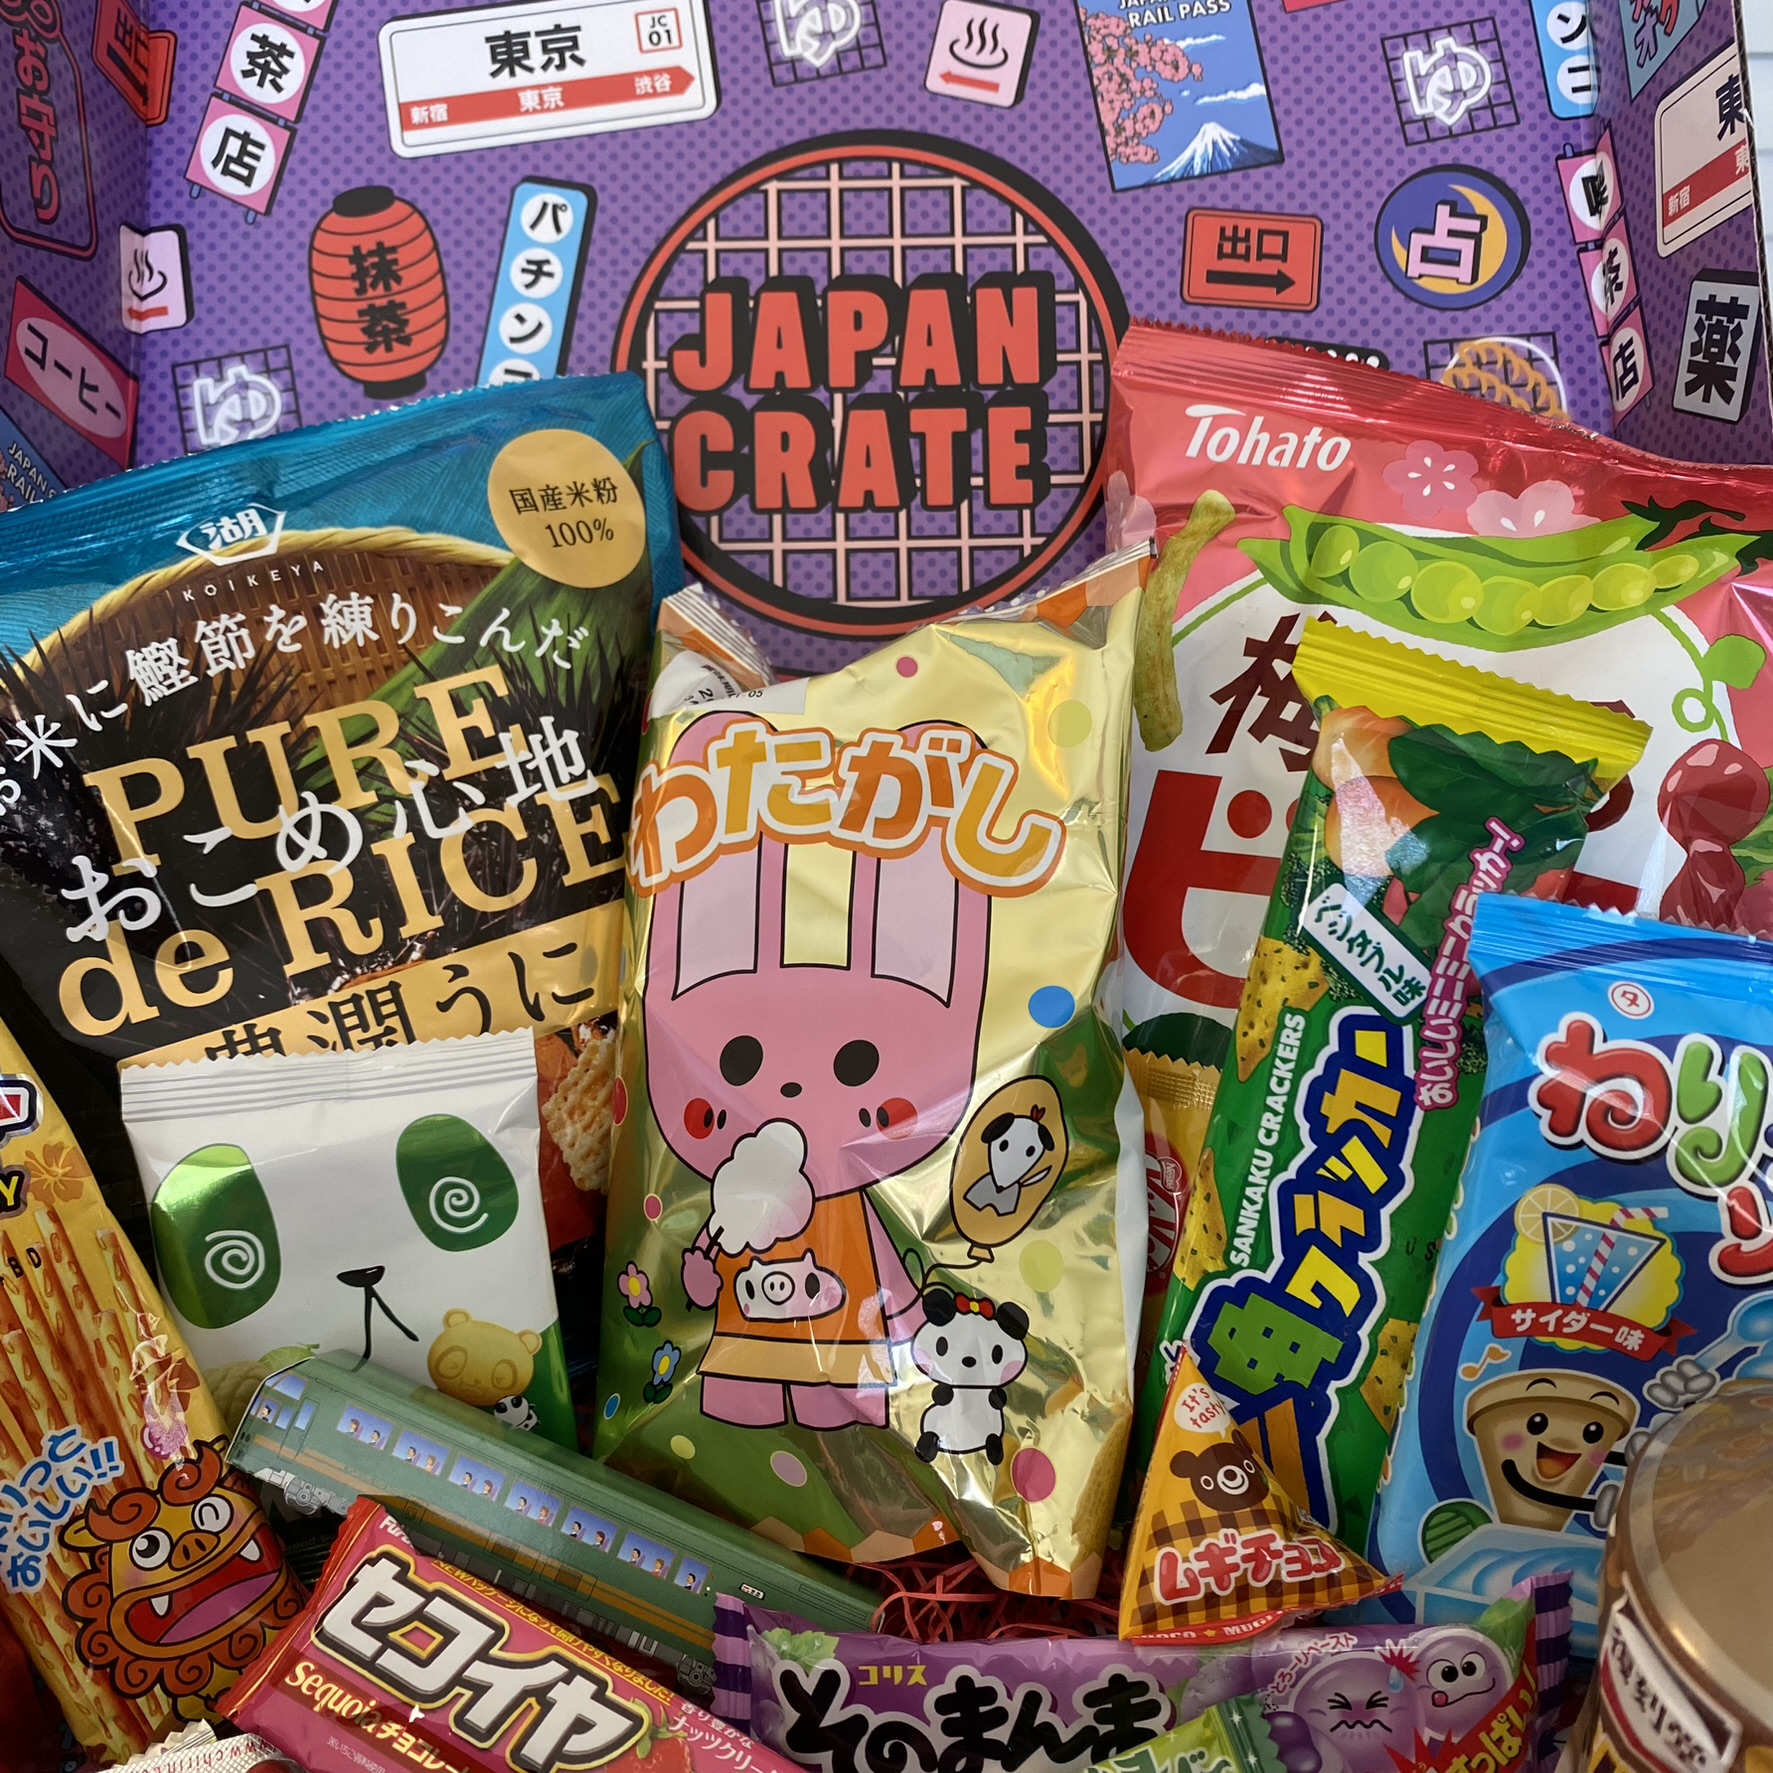 Japan Crate Premium Box Review May 2023